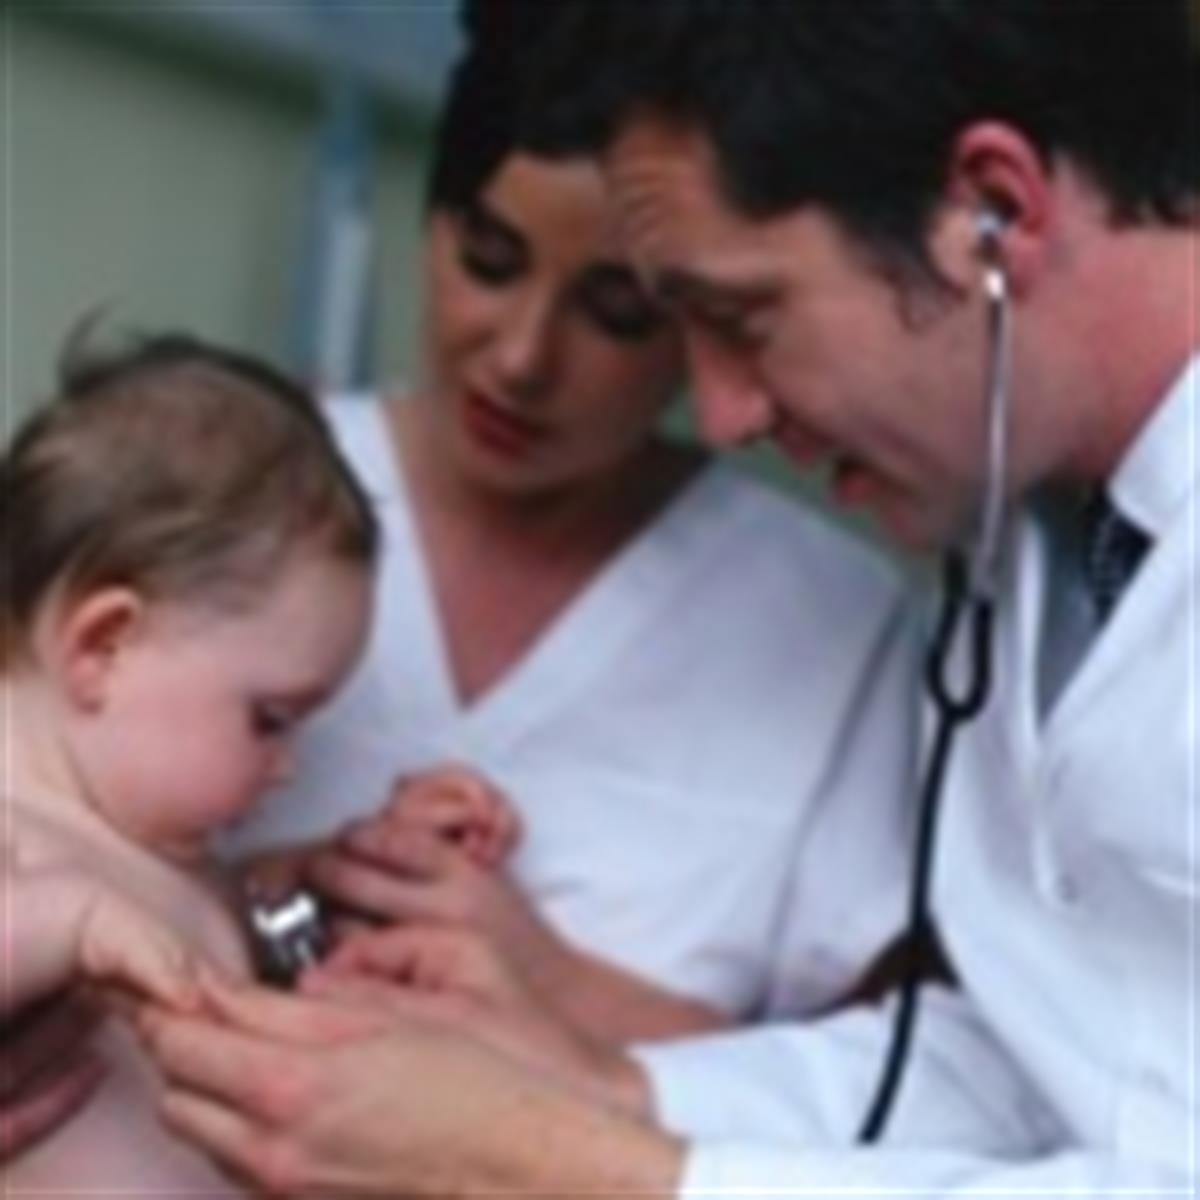 Cuándo la forma de la cabeza de un recién nacido requiere atención médica?  - Children's Health